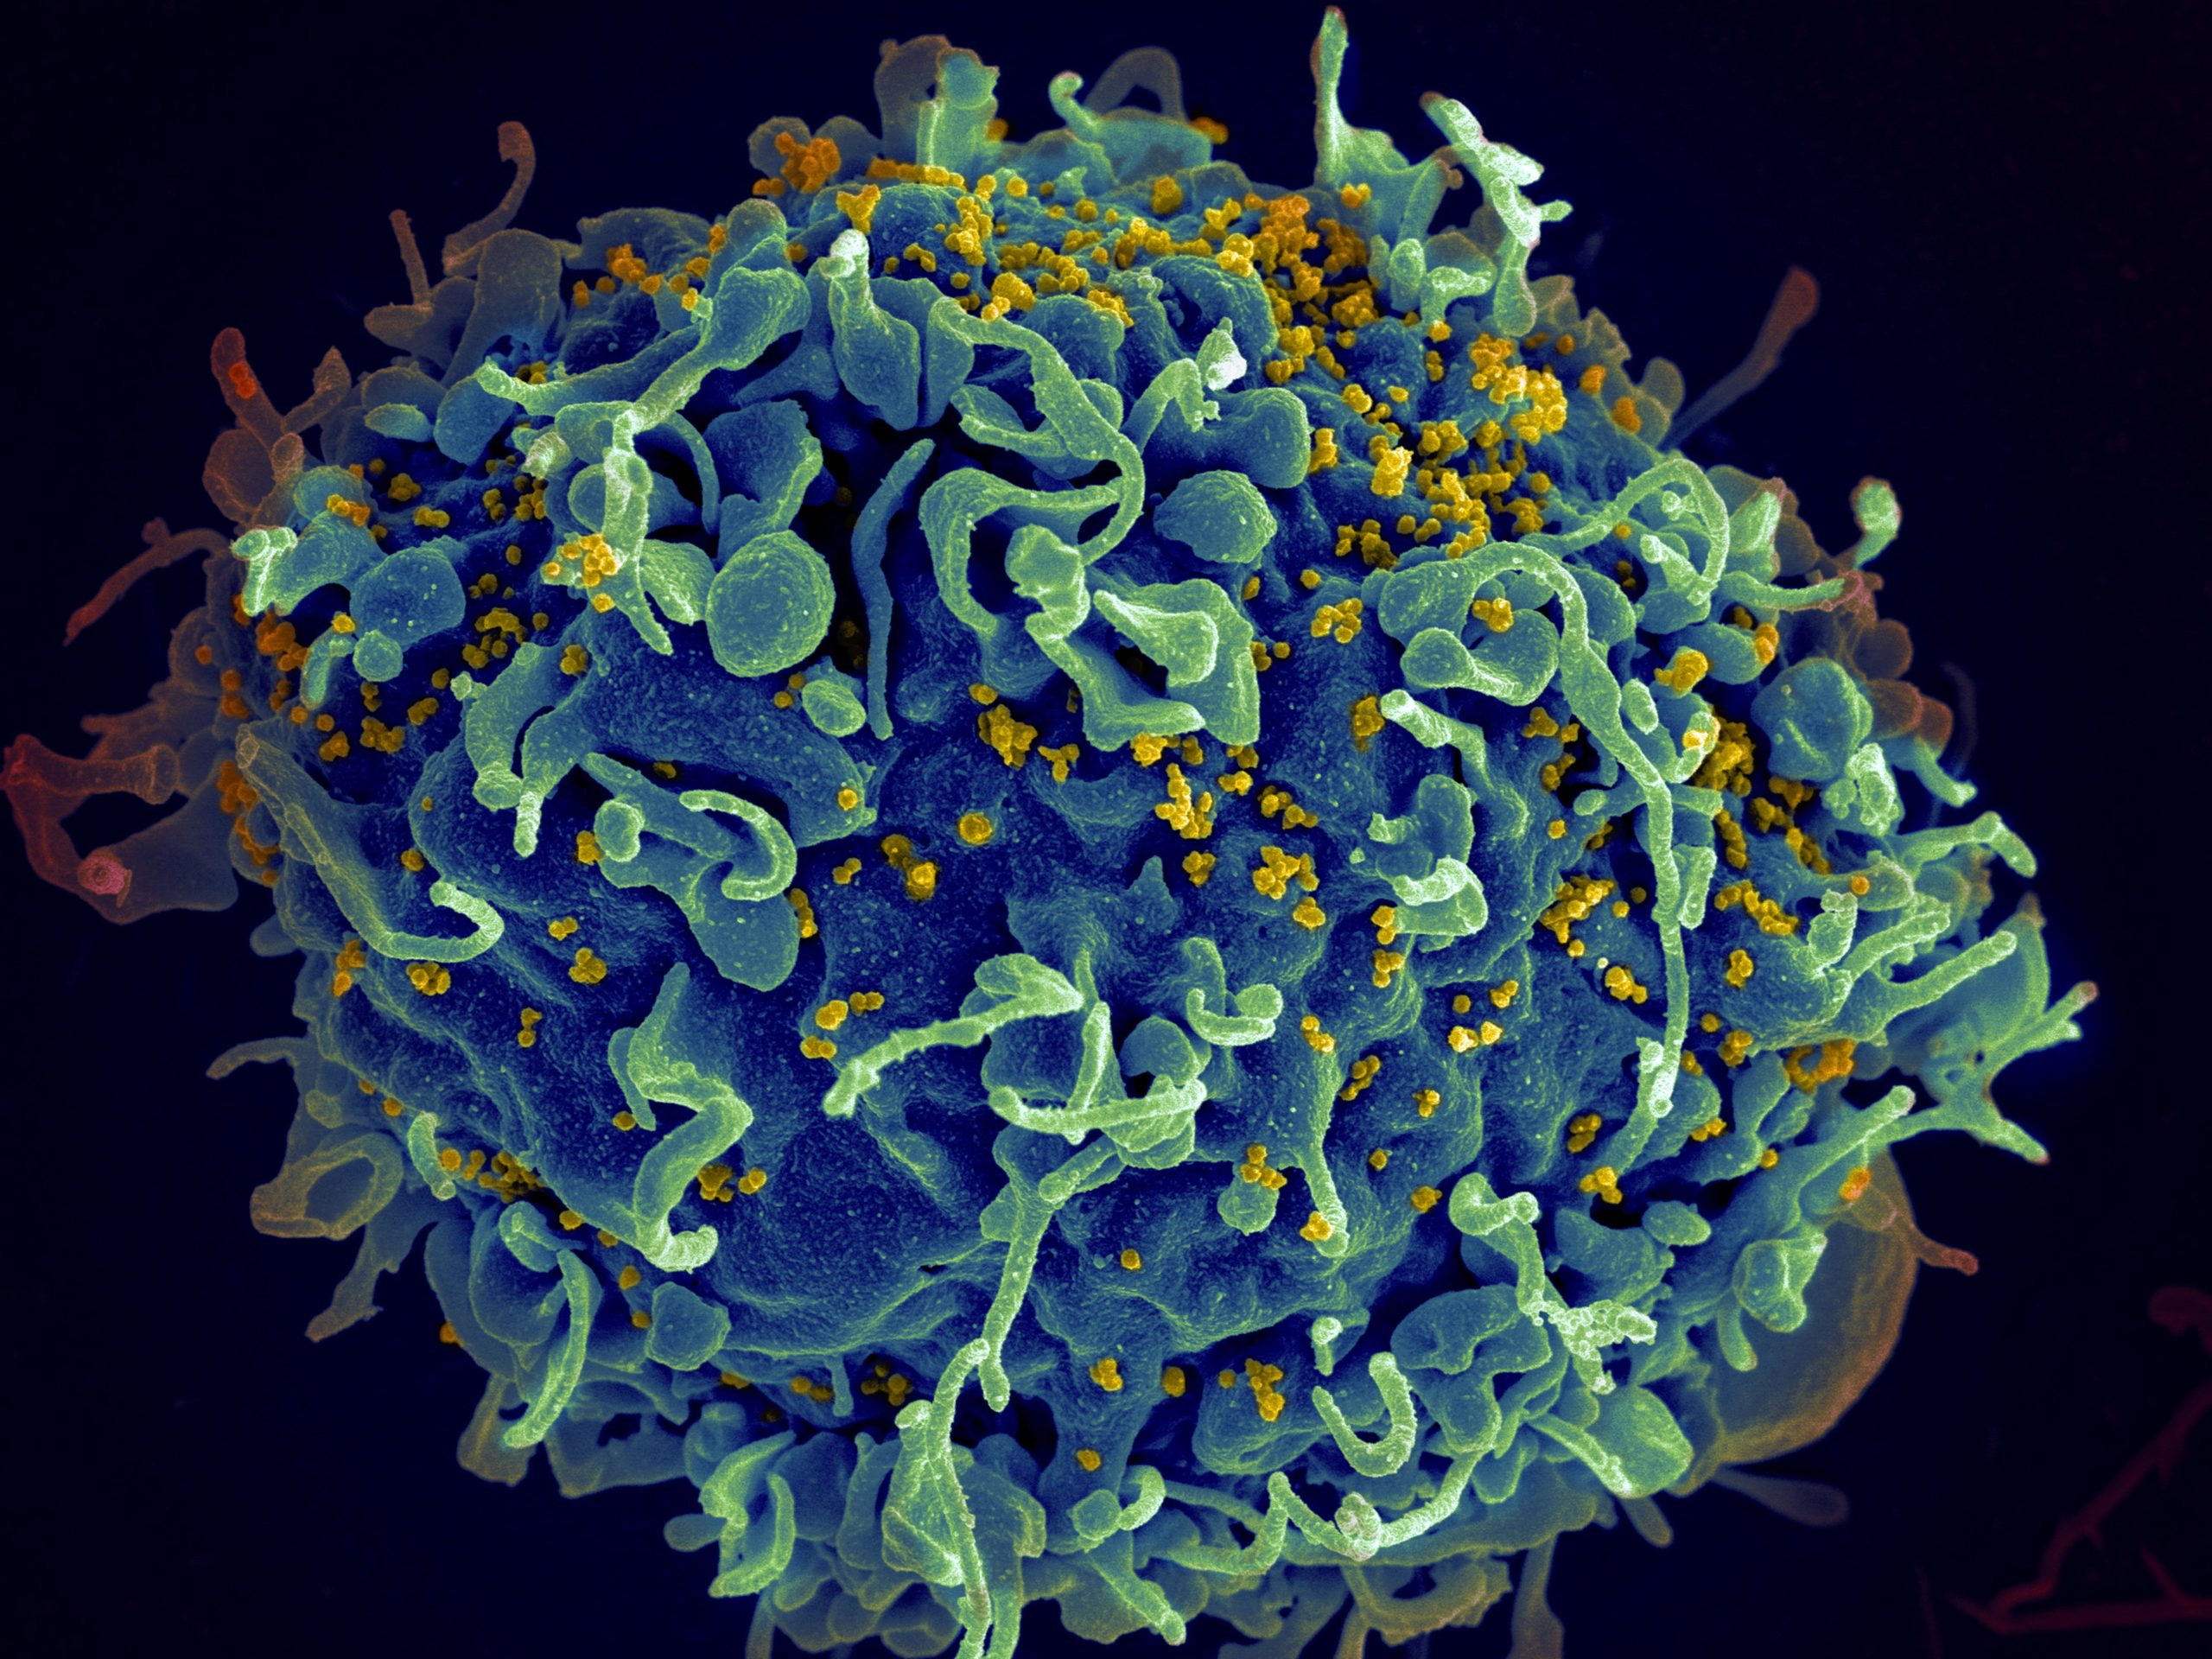 Американские учёные успешно испытали вакцину от ВИЧ  - ZDRAVBUD.NET